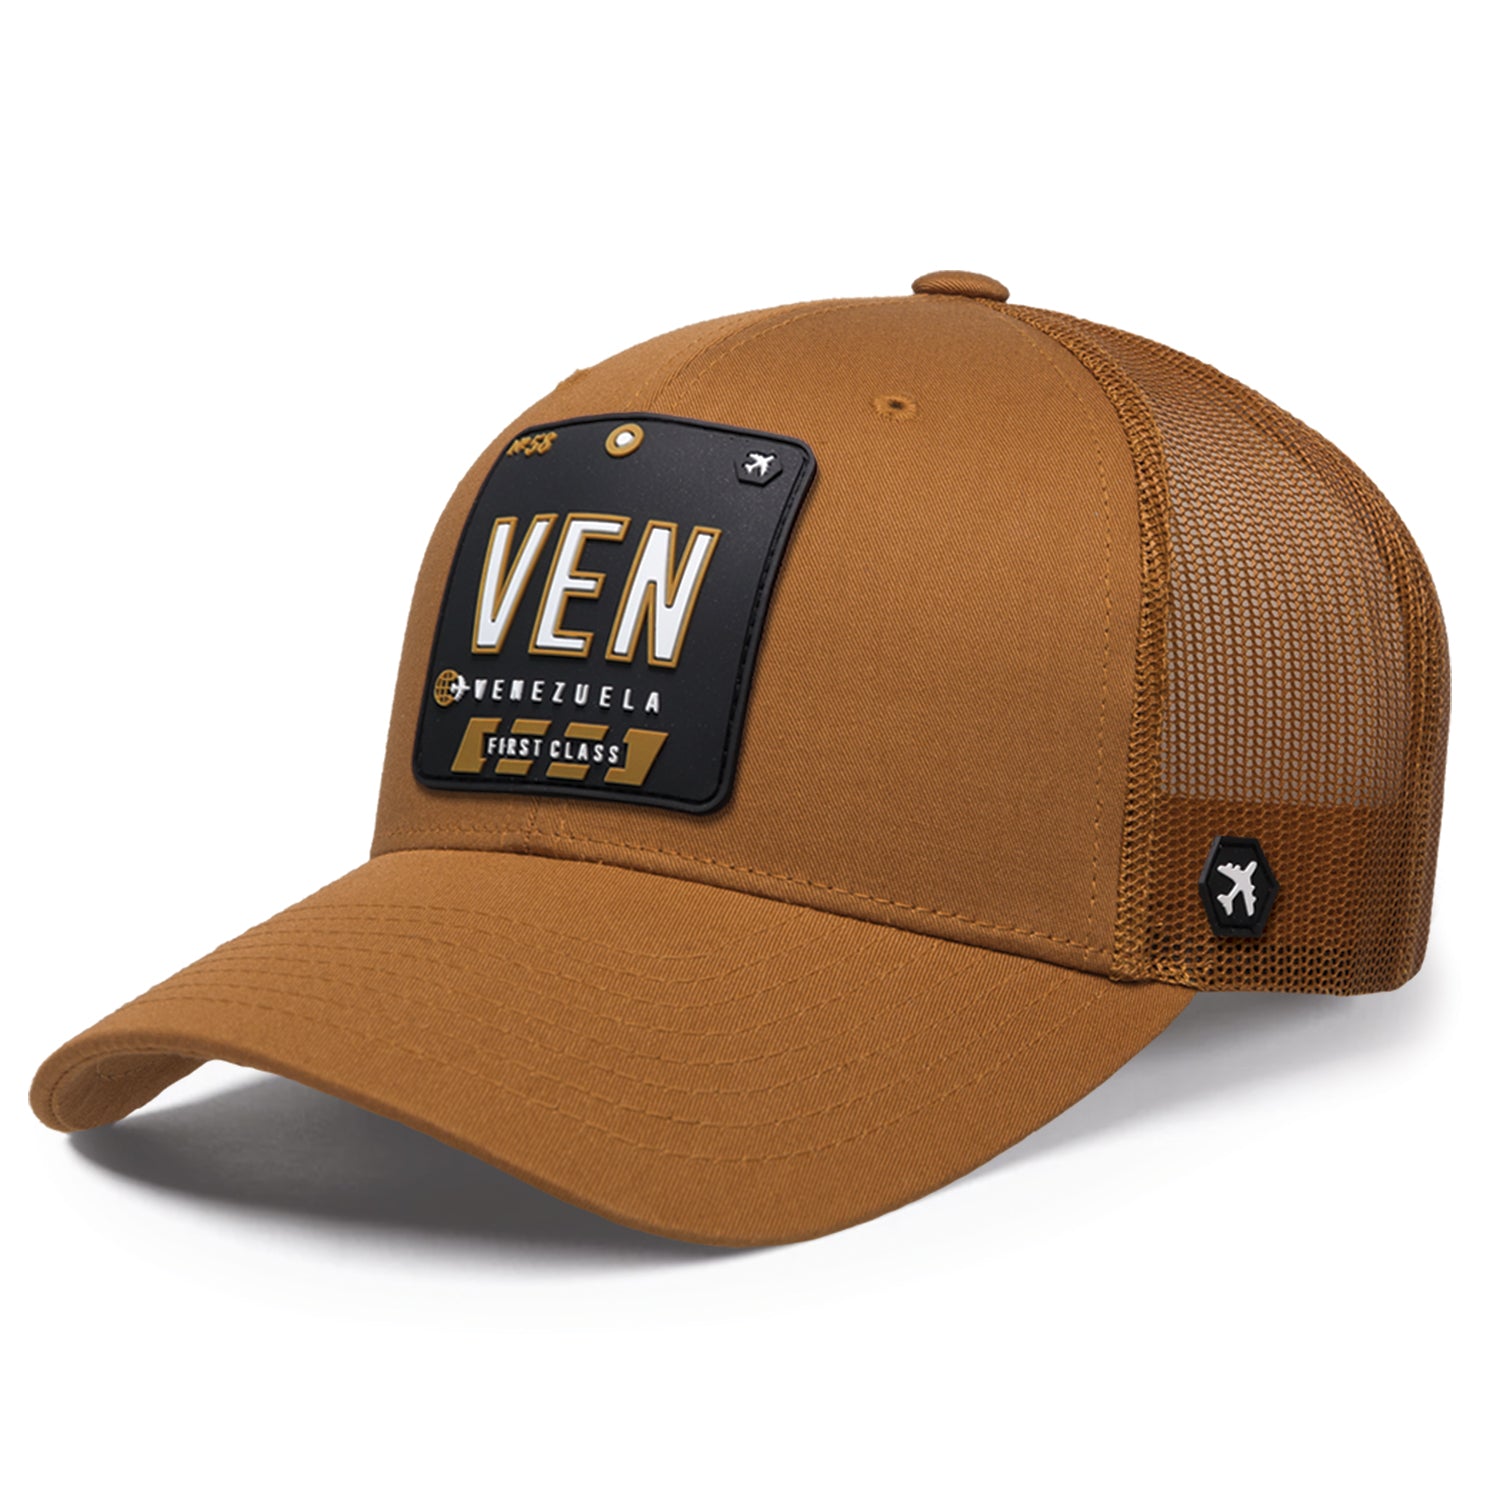 VEN - Venezuela Trucker Hat Caramel